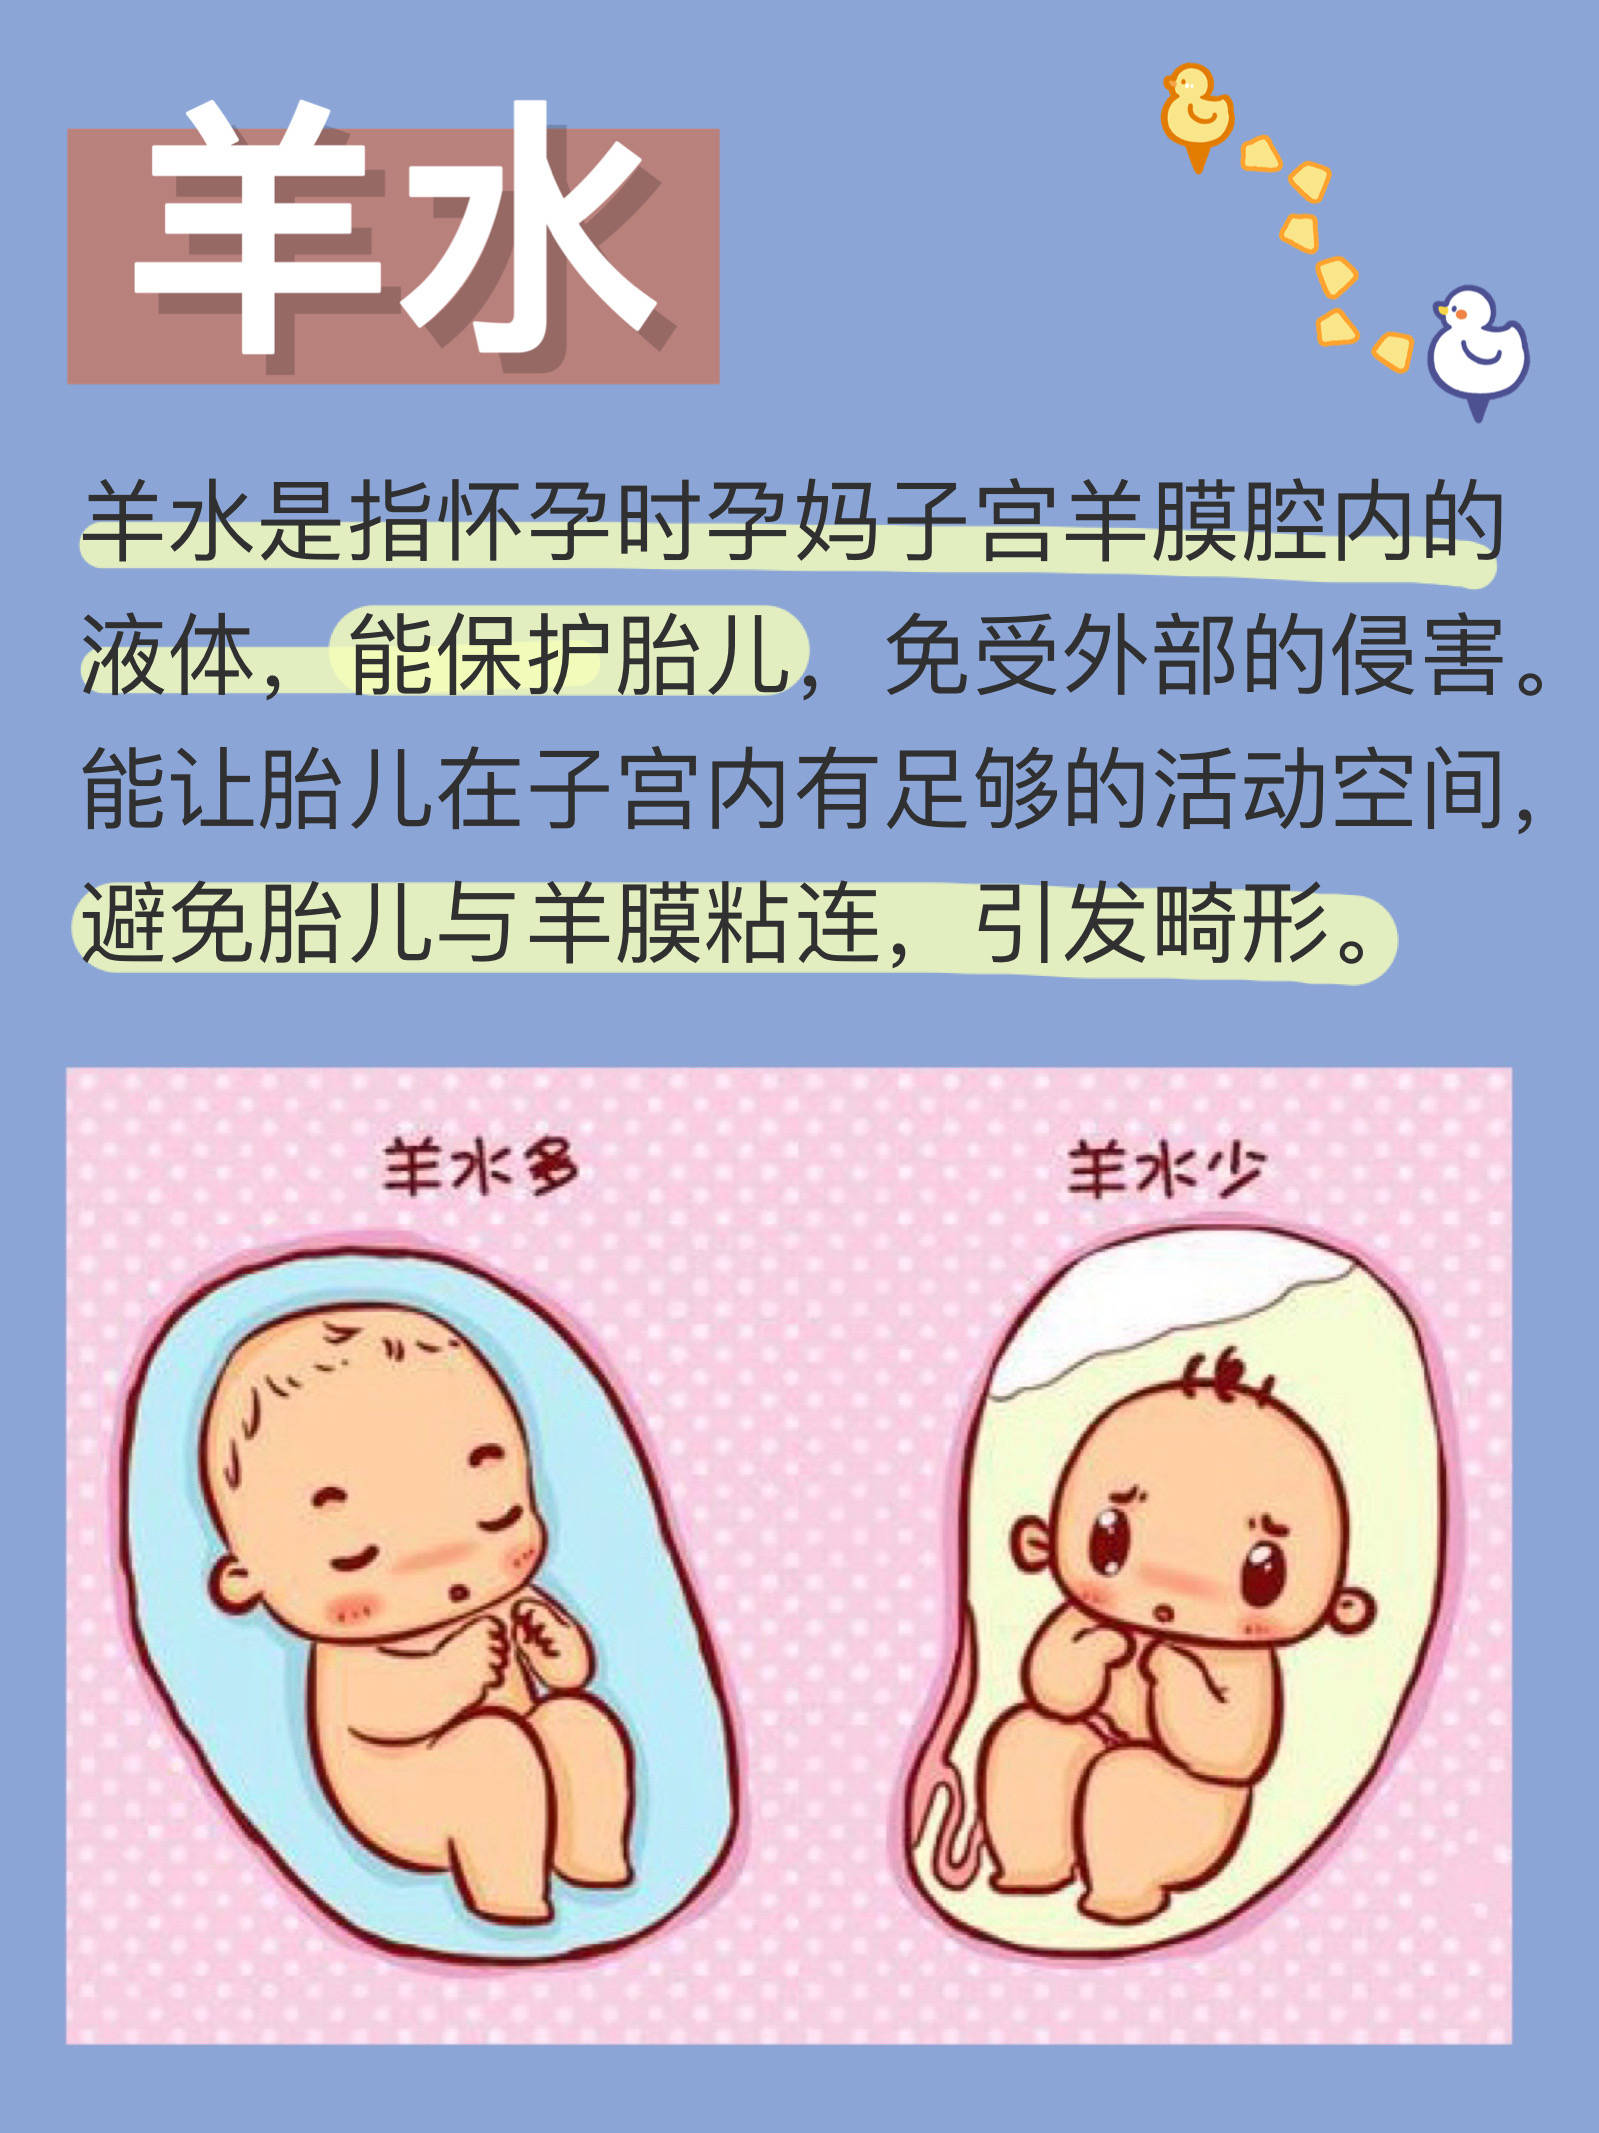 羊水的重要性,孕妈须知|直接影响宝宝健康